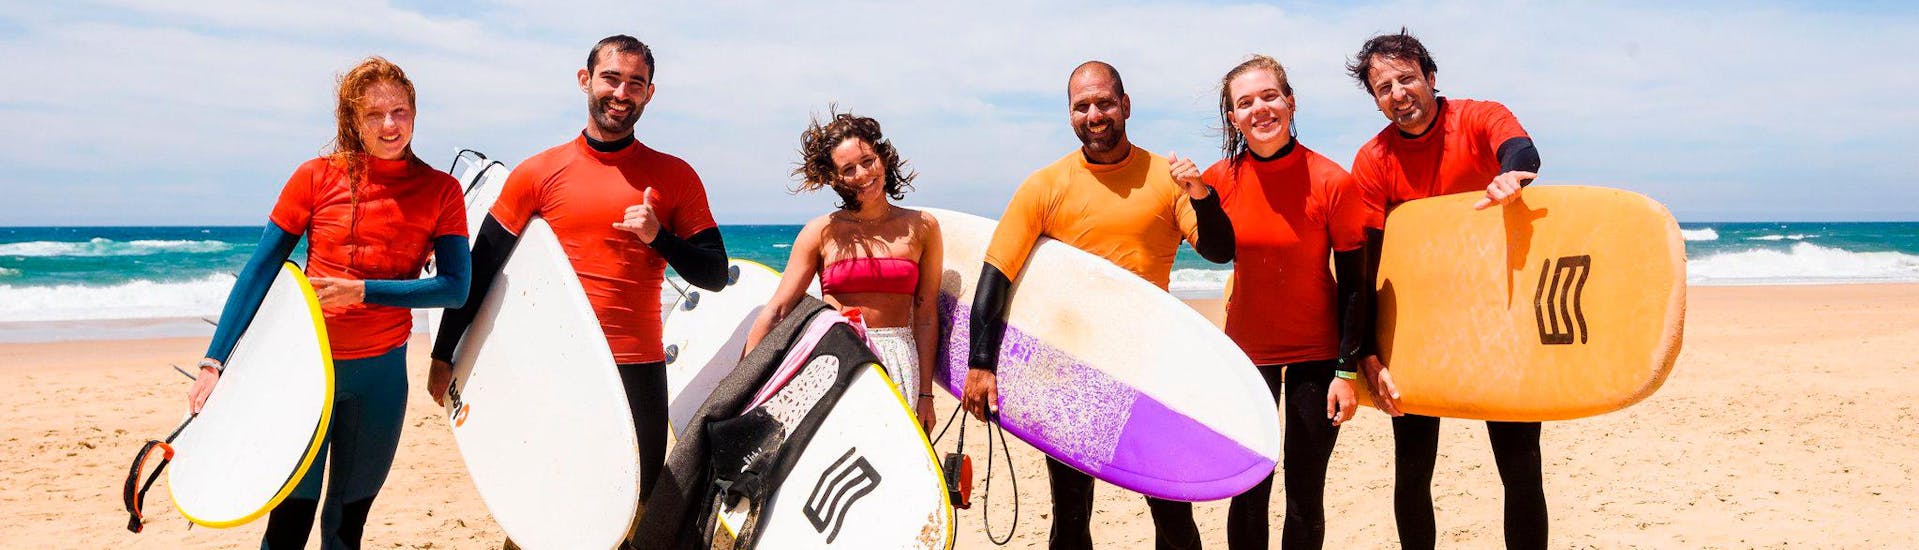 Die Surflehrer von SeaKrew Ericeira posieren gemeinsam gut gelaunt für ein Foto